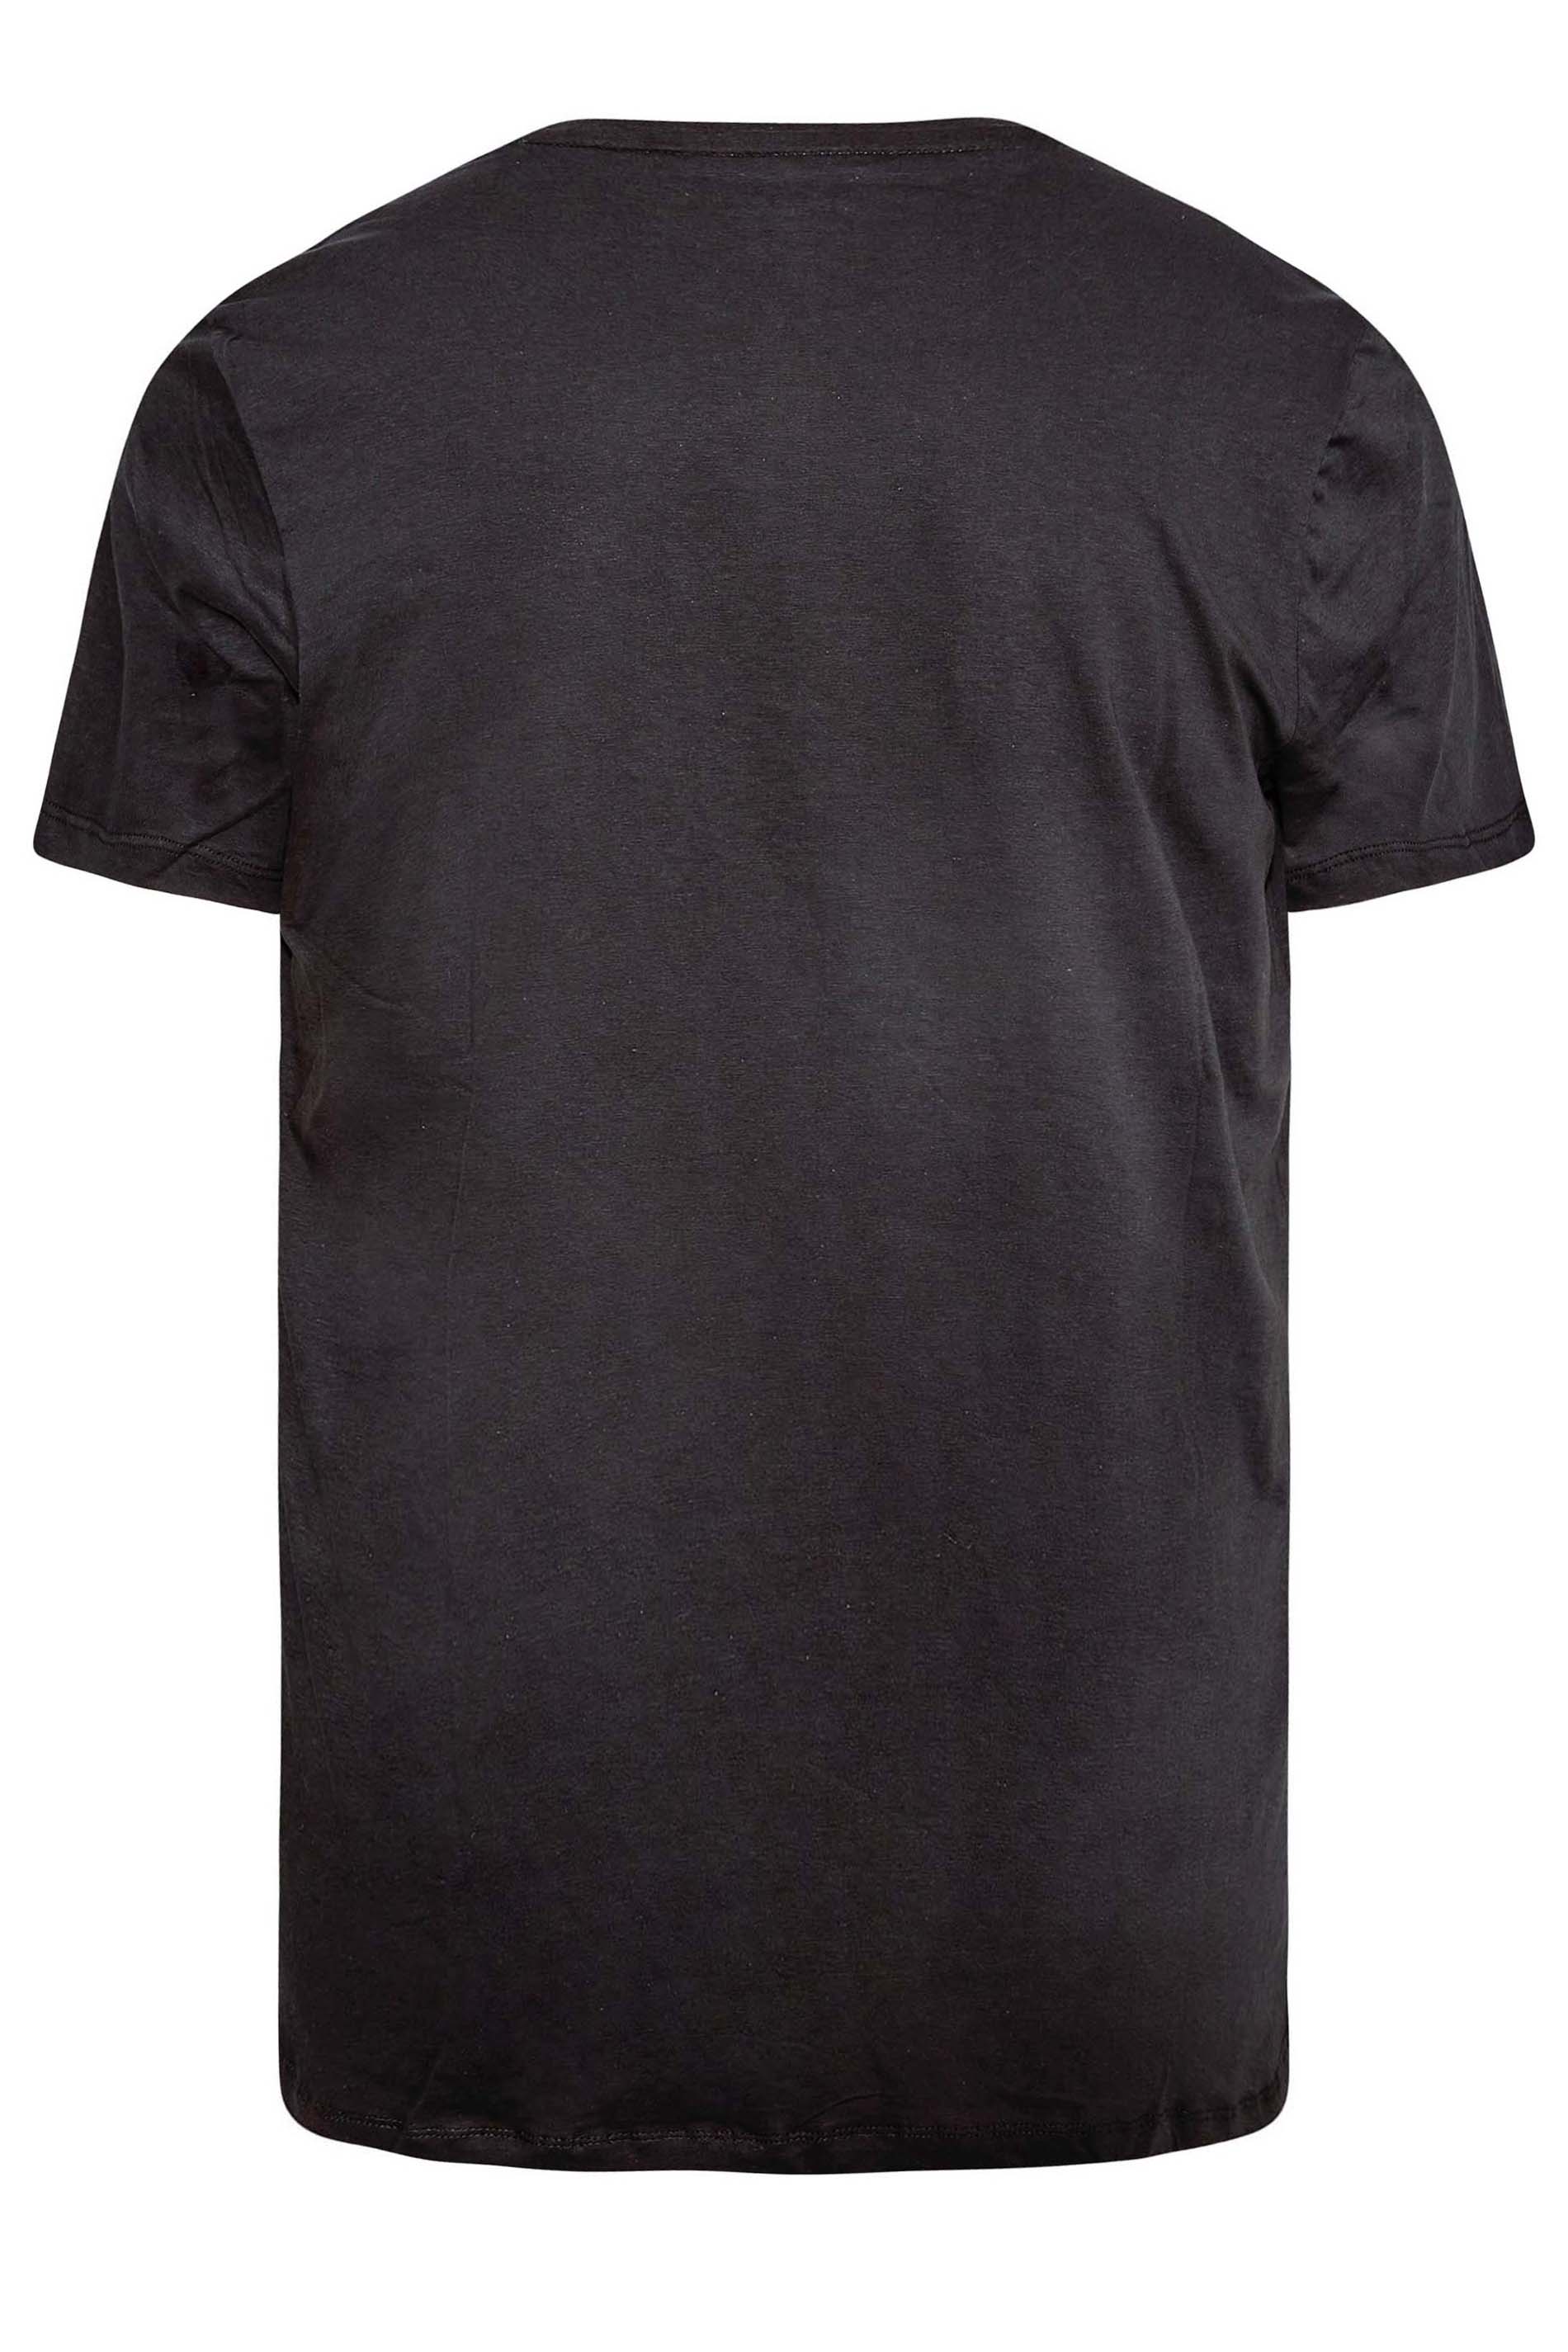 BLEND Big & Tall Black 'Crafted' Print T-Shirt | BadRhino 3